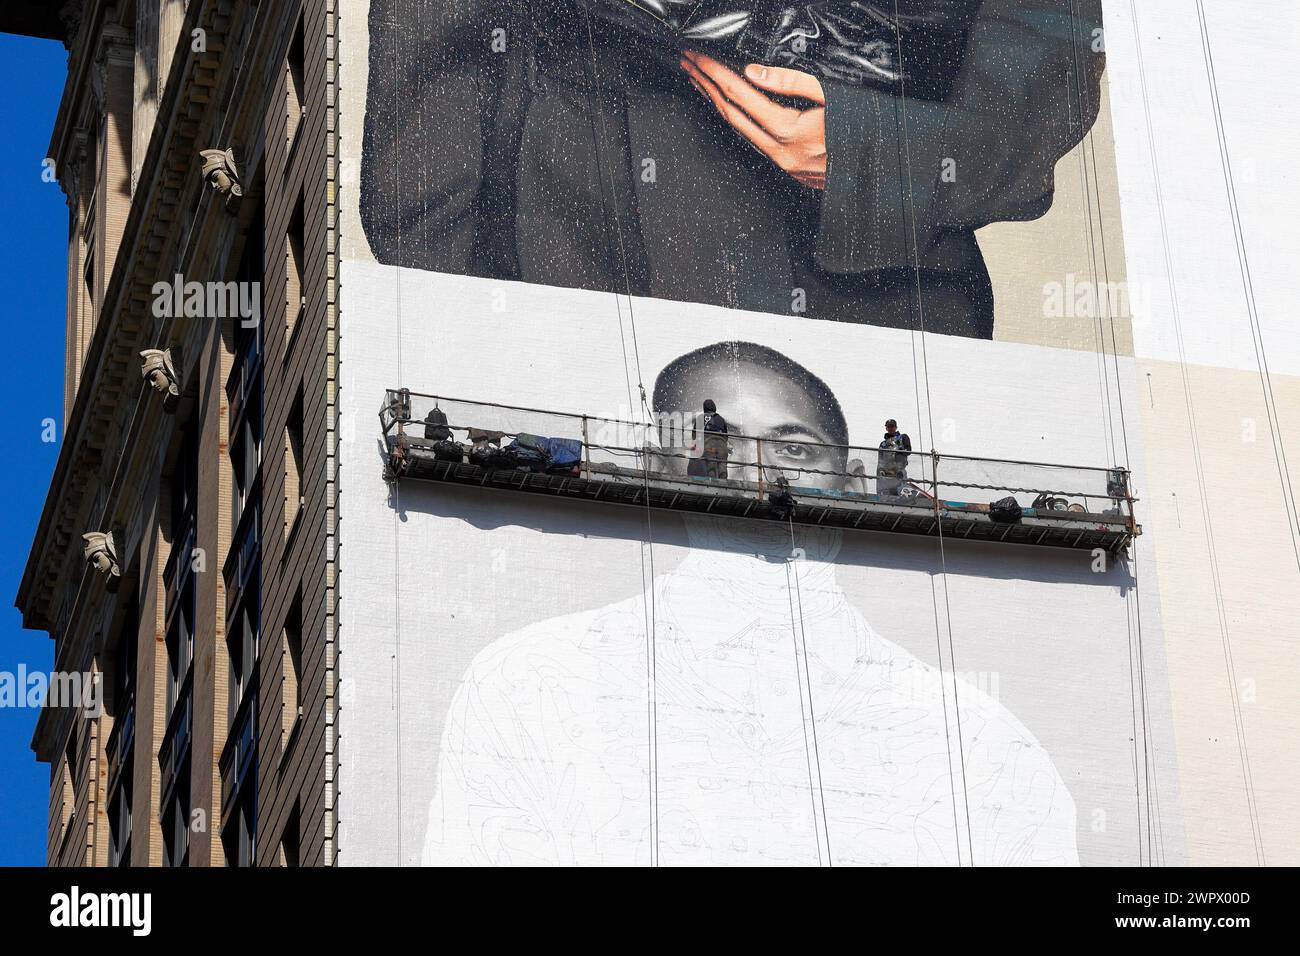 Artisti commerciali, pittori su un'impalcatura sospesa che dipingono a mano un cartellone pubblicitario sul lato di un alto edificio a New York City. Foto Stock